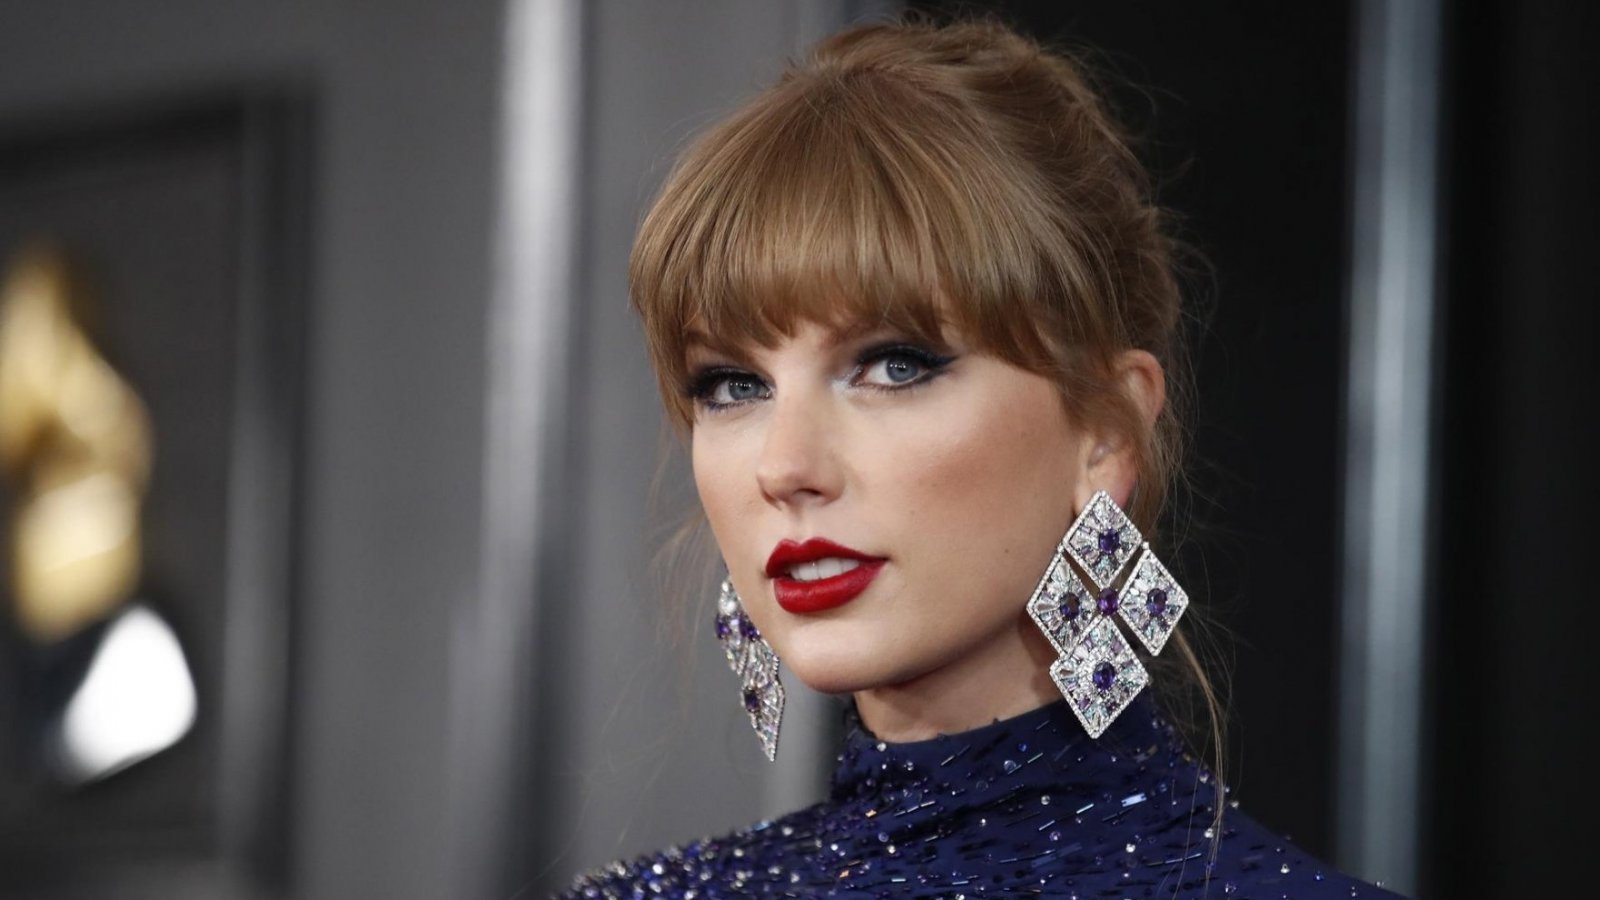 Revista Time elige a Taylor Swift como la Persona del Año